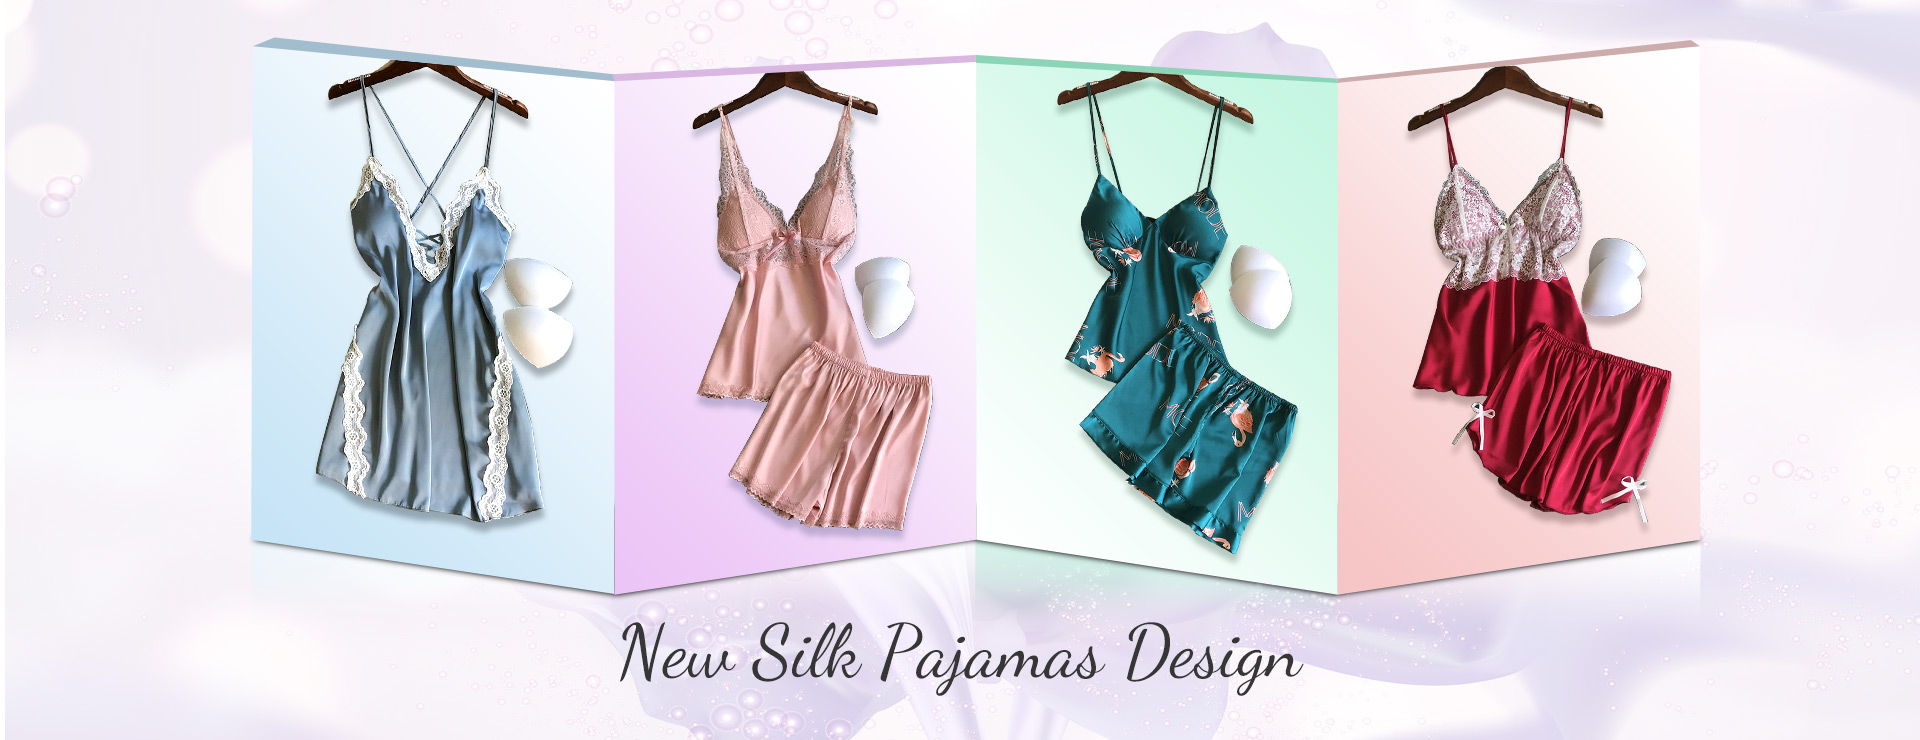 New Silk Pajamas Design